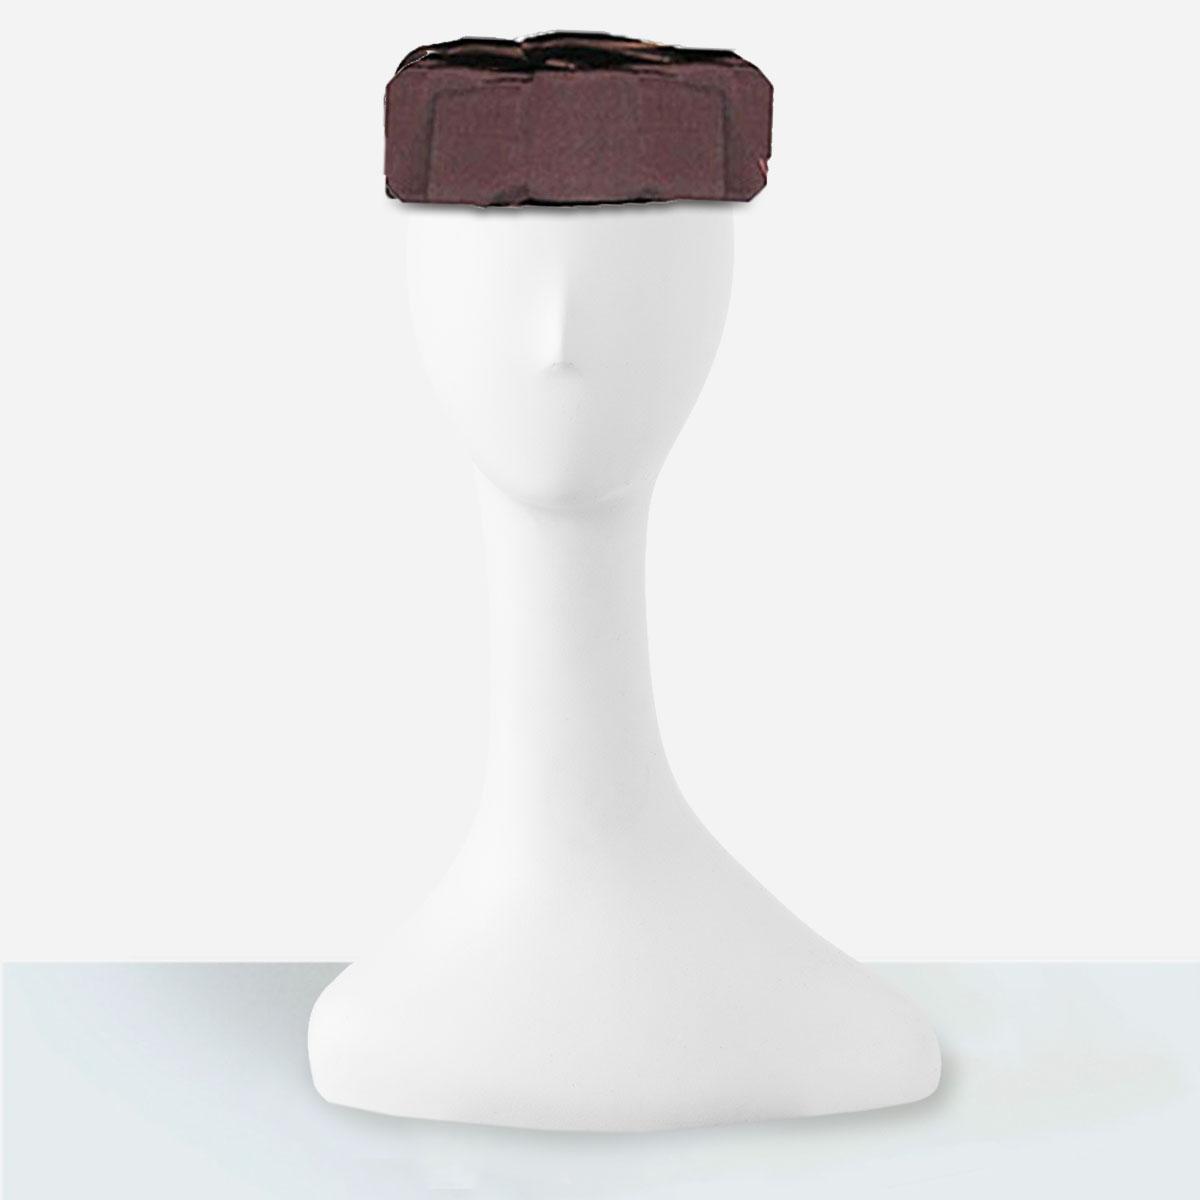 brown velvet pillbox hat